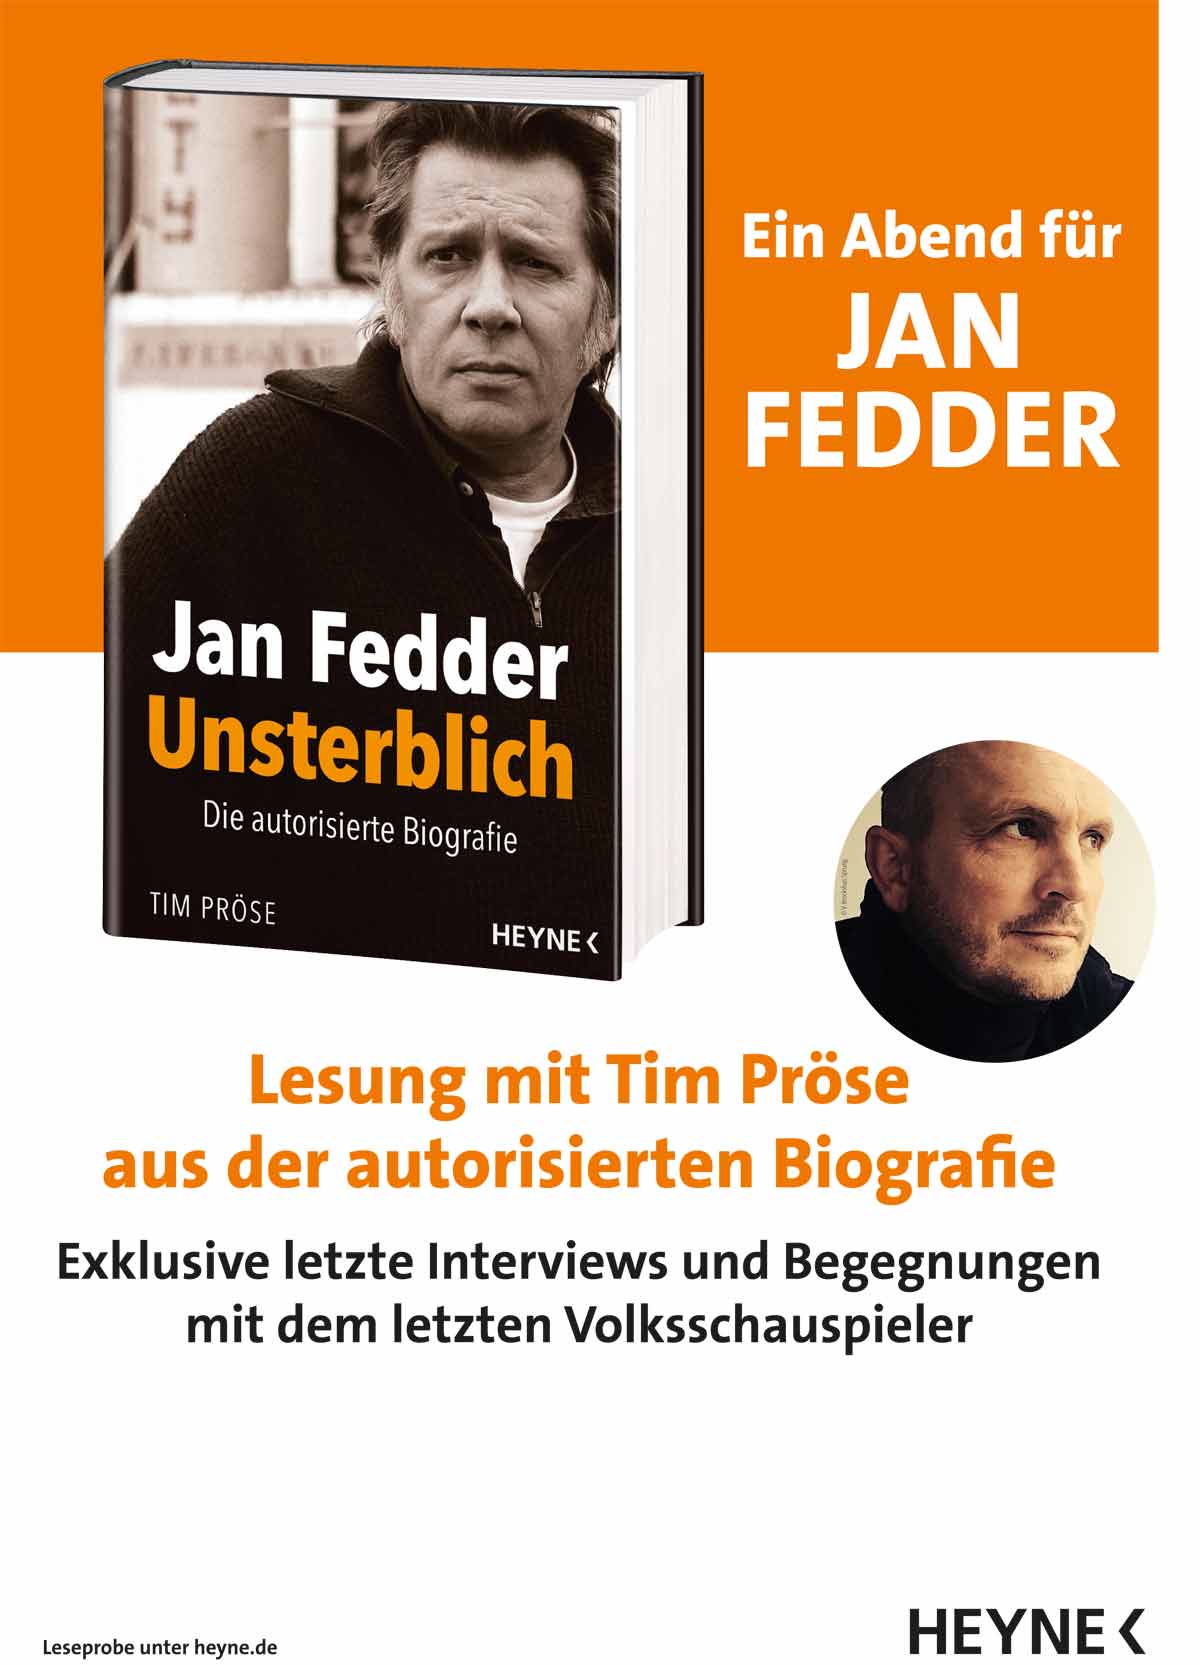 Plakat: Ein Abend für Jan Fedder